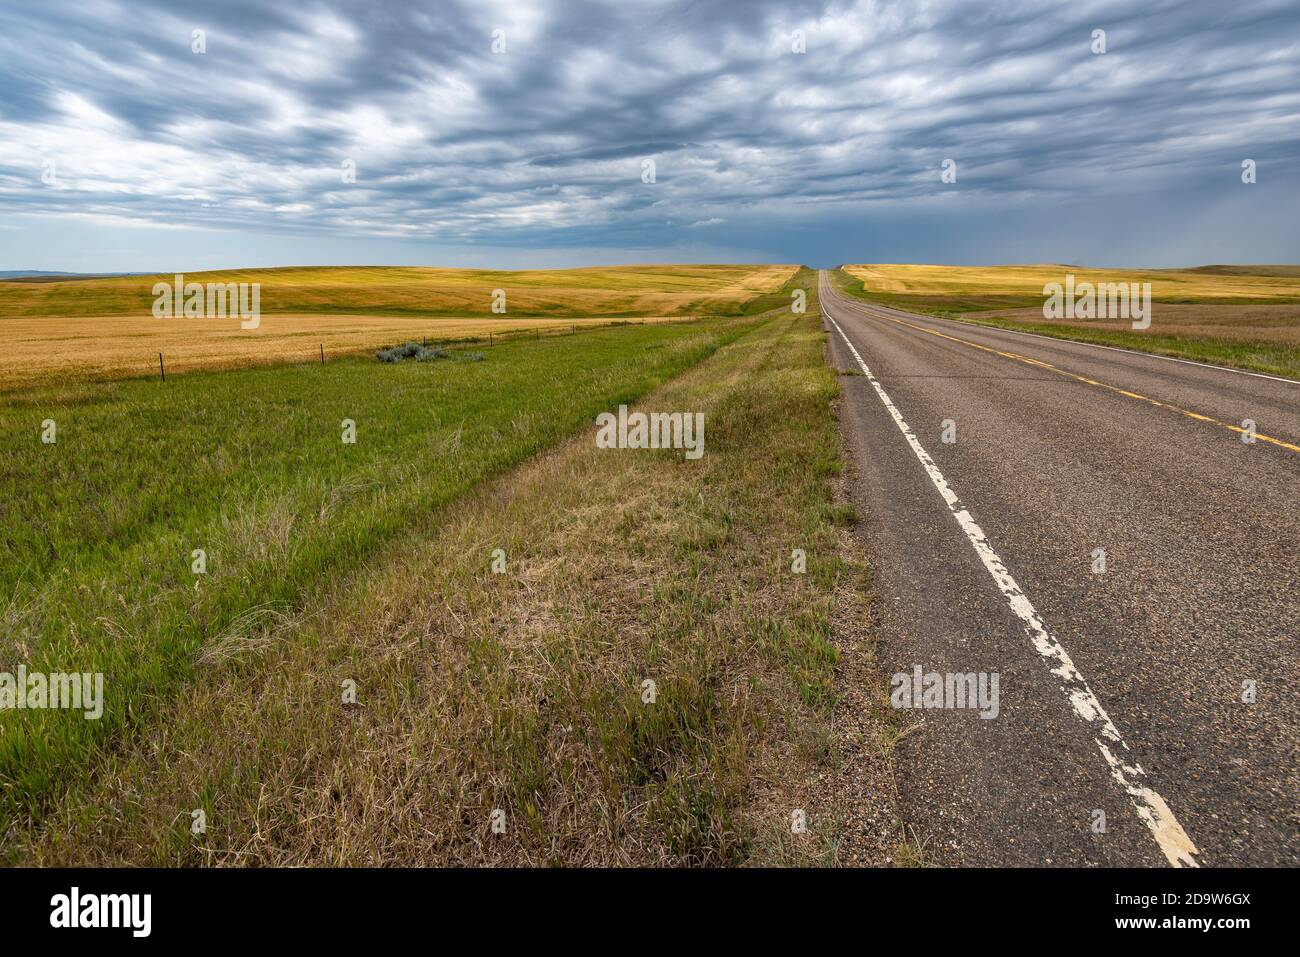 Highway Passes through Wheat Fields in Western North Dakota Stock Photo